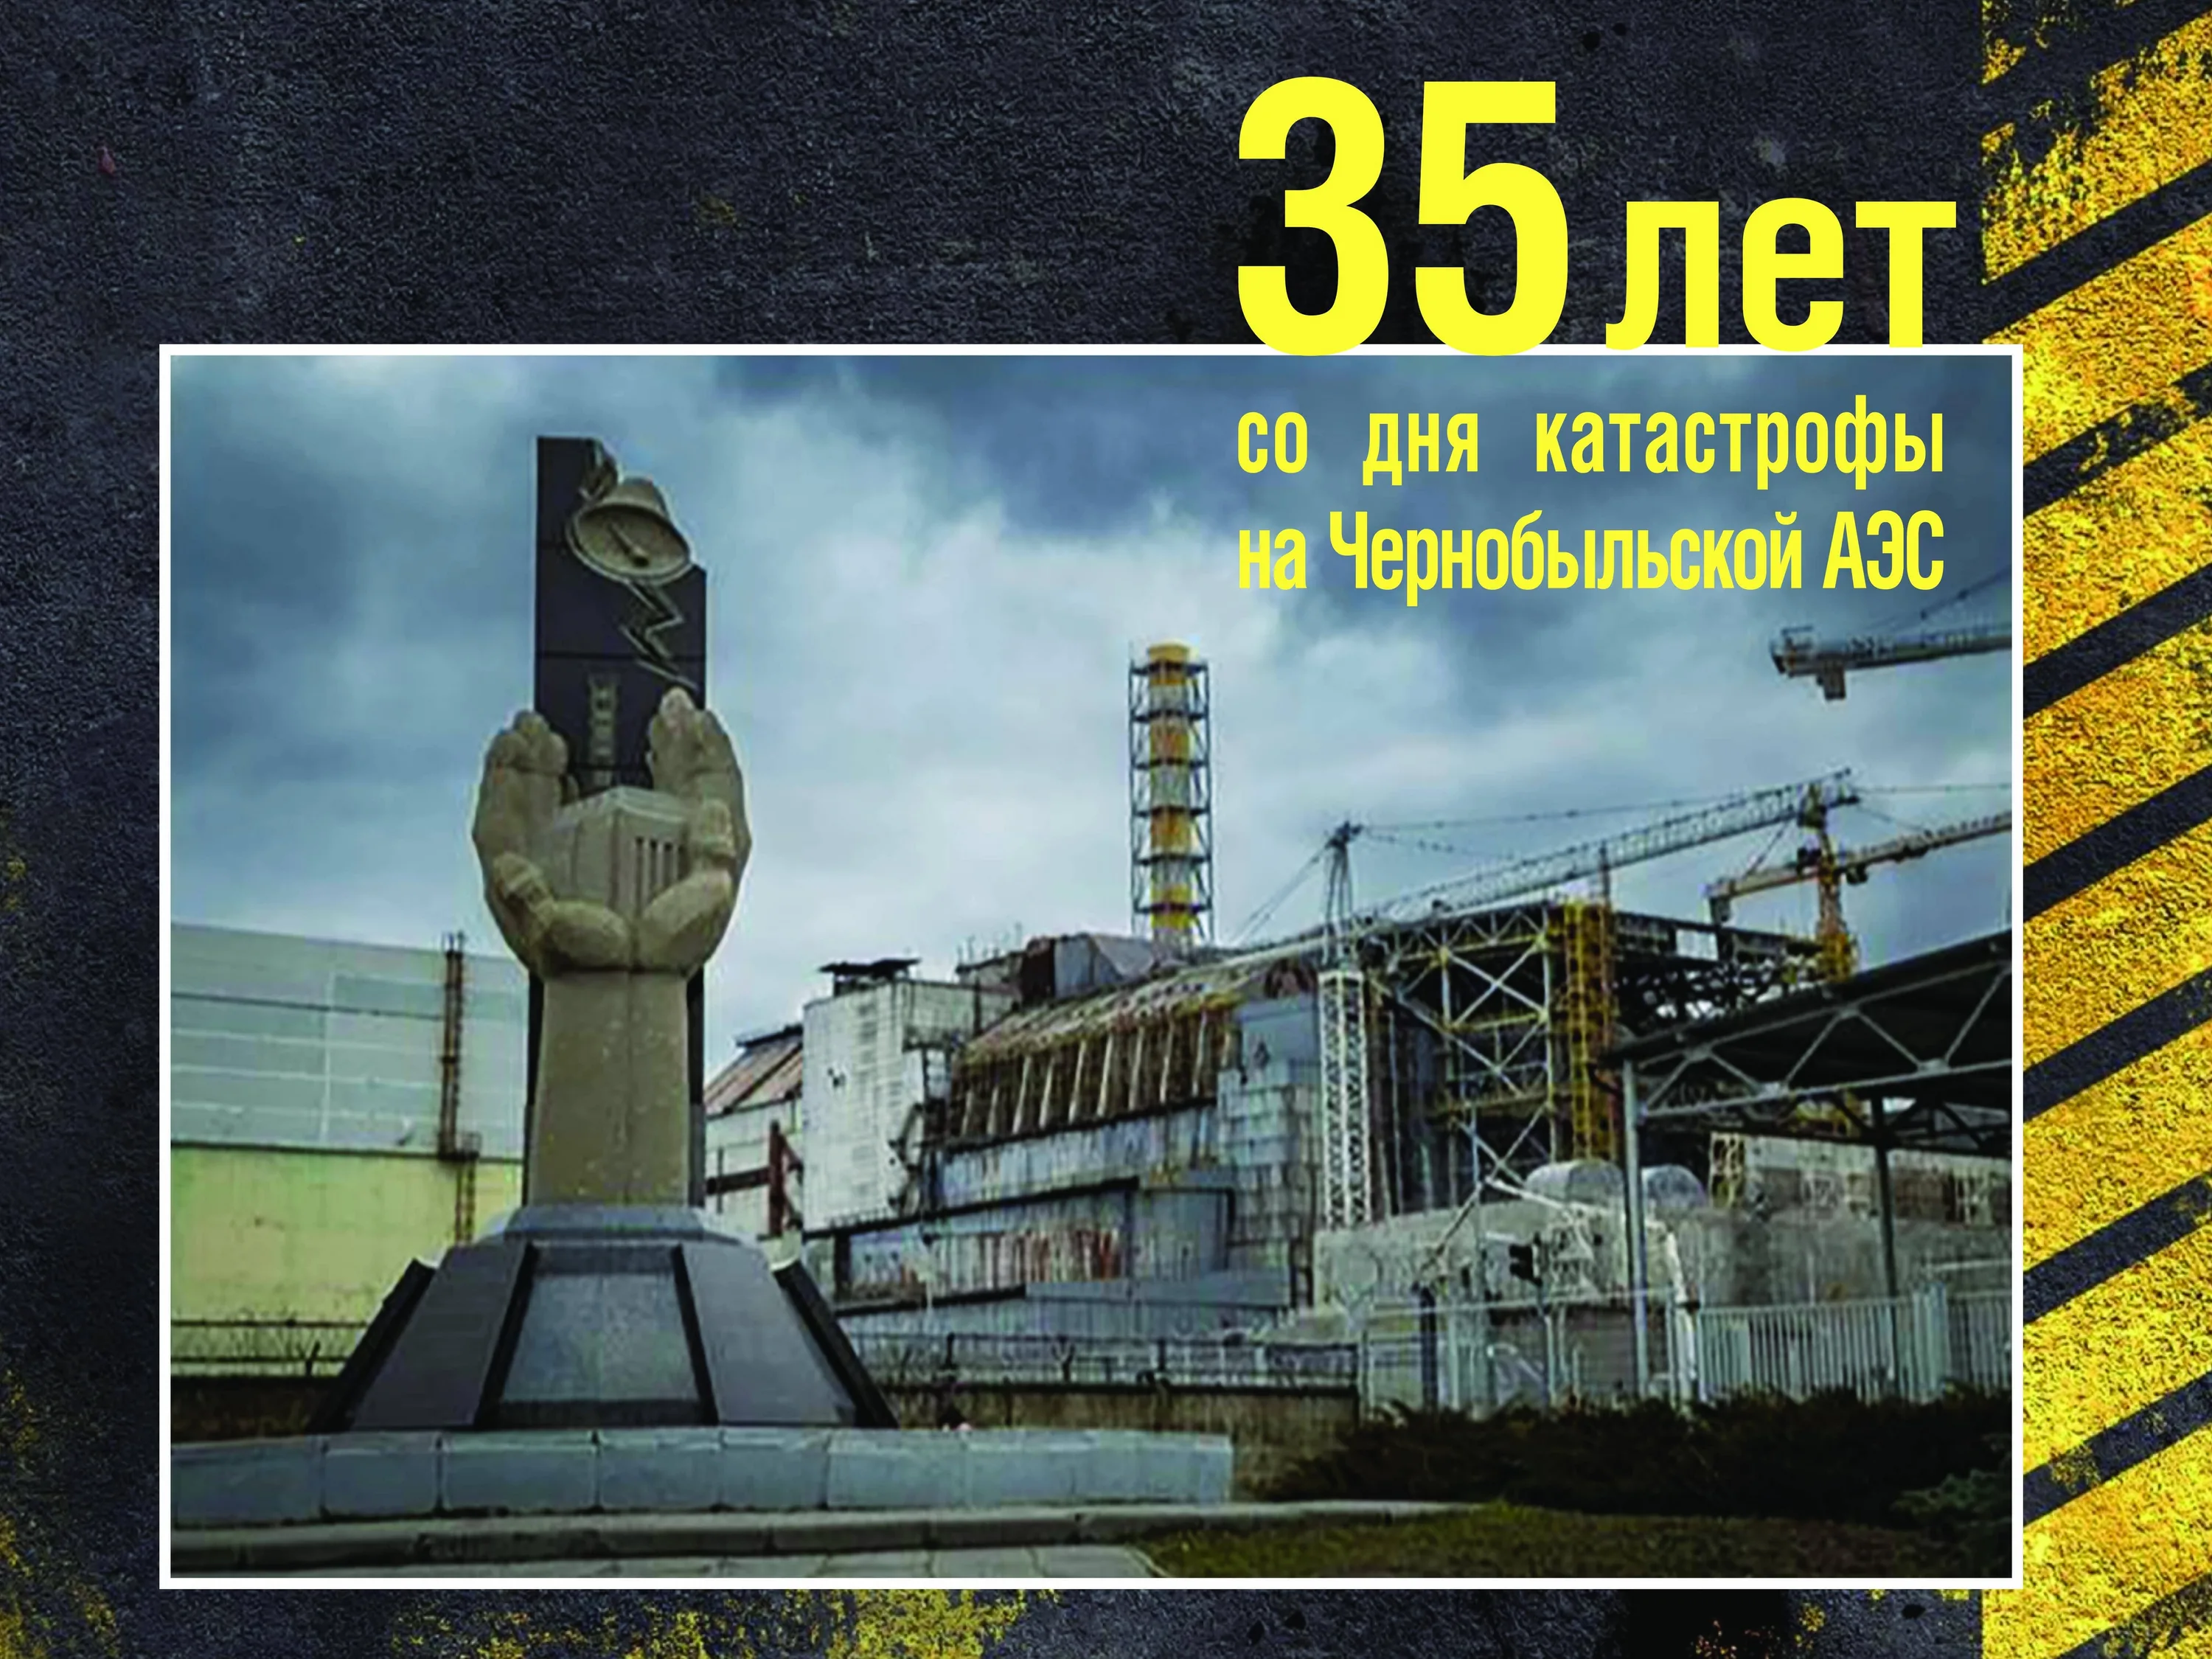 День памяти чернобыльской трагедии. 26 Апреля 1986 день памяти Чернобыльской АЭС. Чернобыль взрыв атомной станции 1986. ЧАЭС 26.04.1986. 35 Лет со дня аварии на Чернобыльской АЭС.